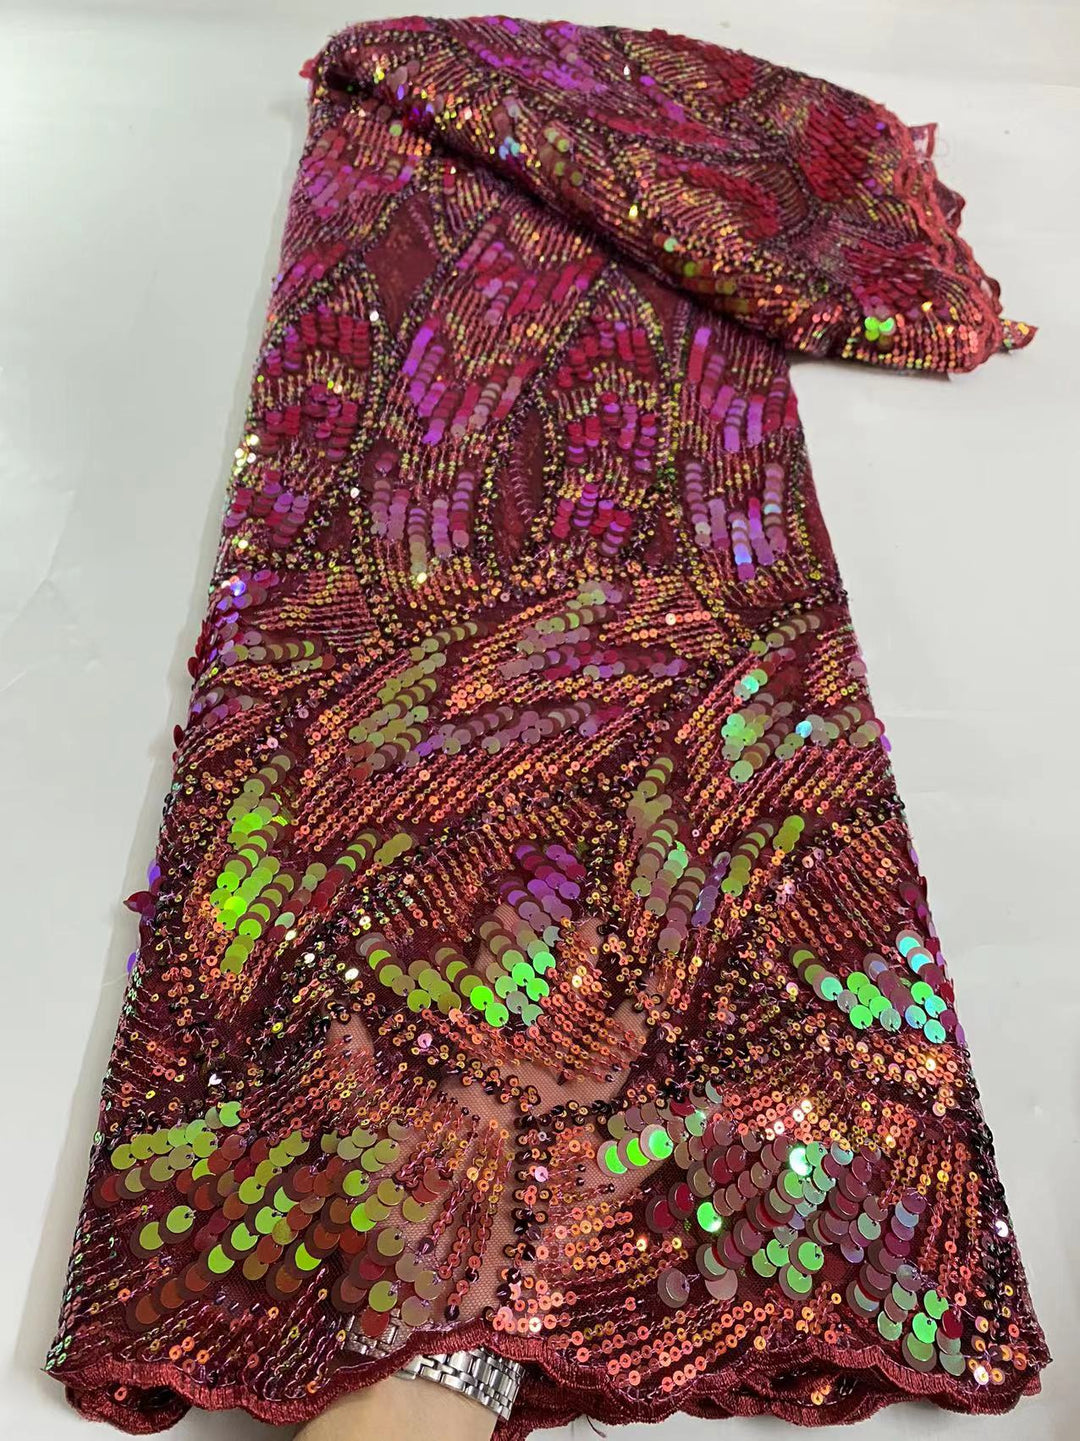 5 YARD / 7 COLORI / Tessuto Nolan per abiti da cerimonia nuziale in pizzo scintillante con ricami di perline e paillettes glitterate